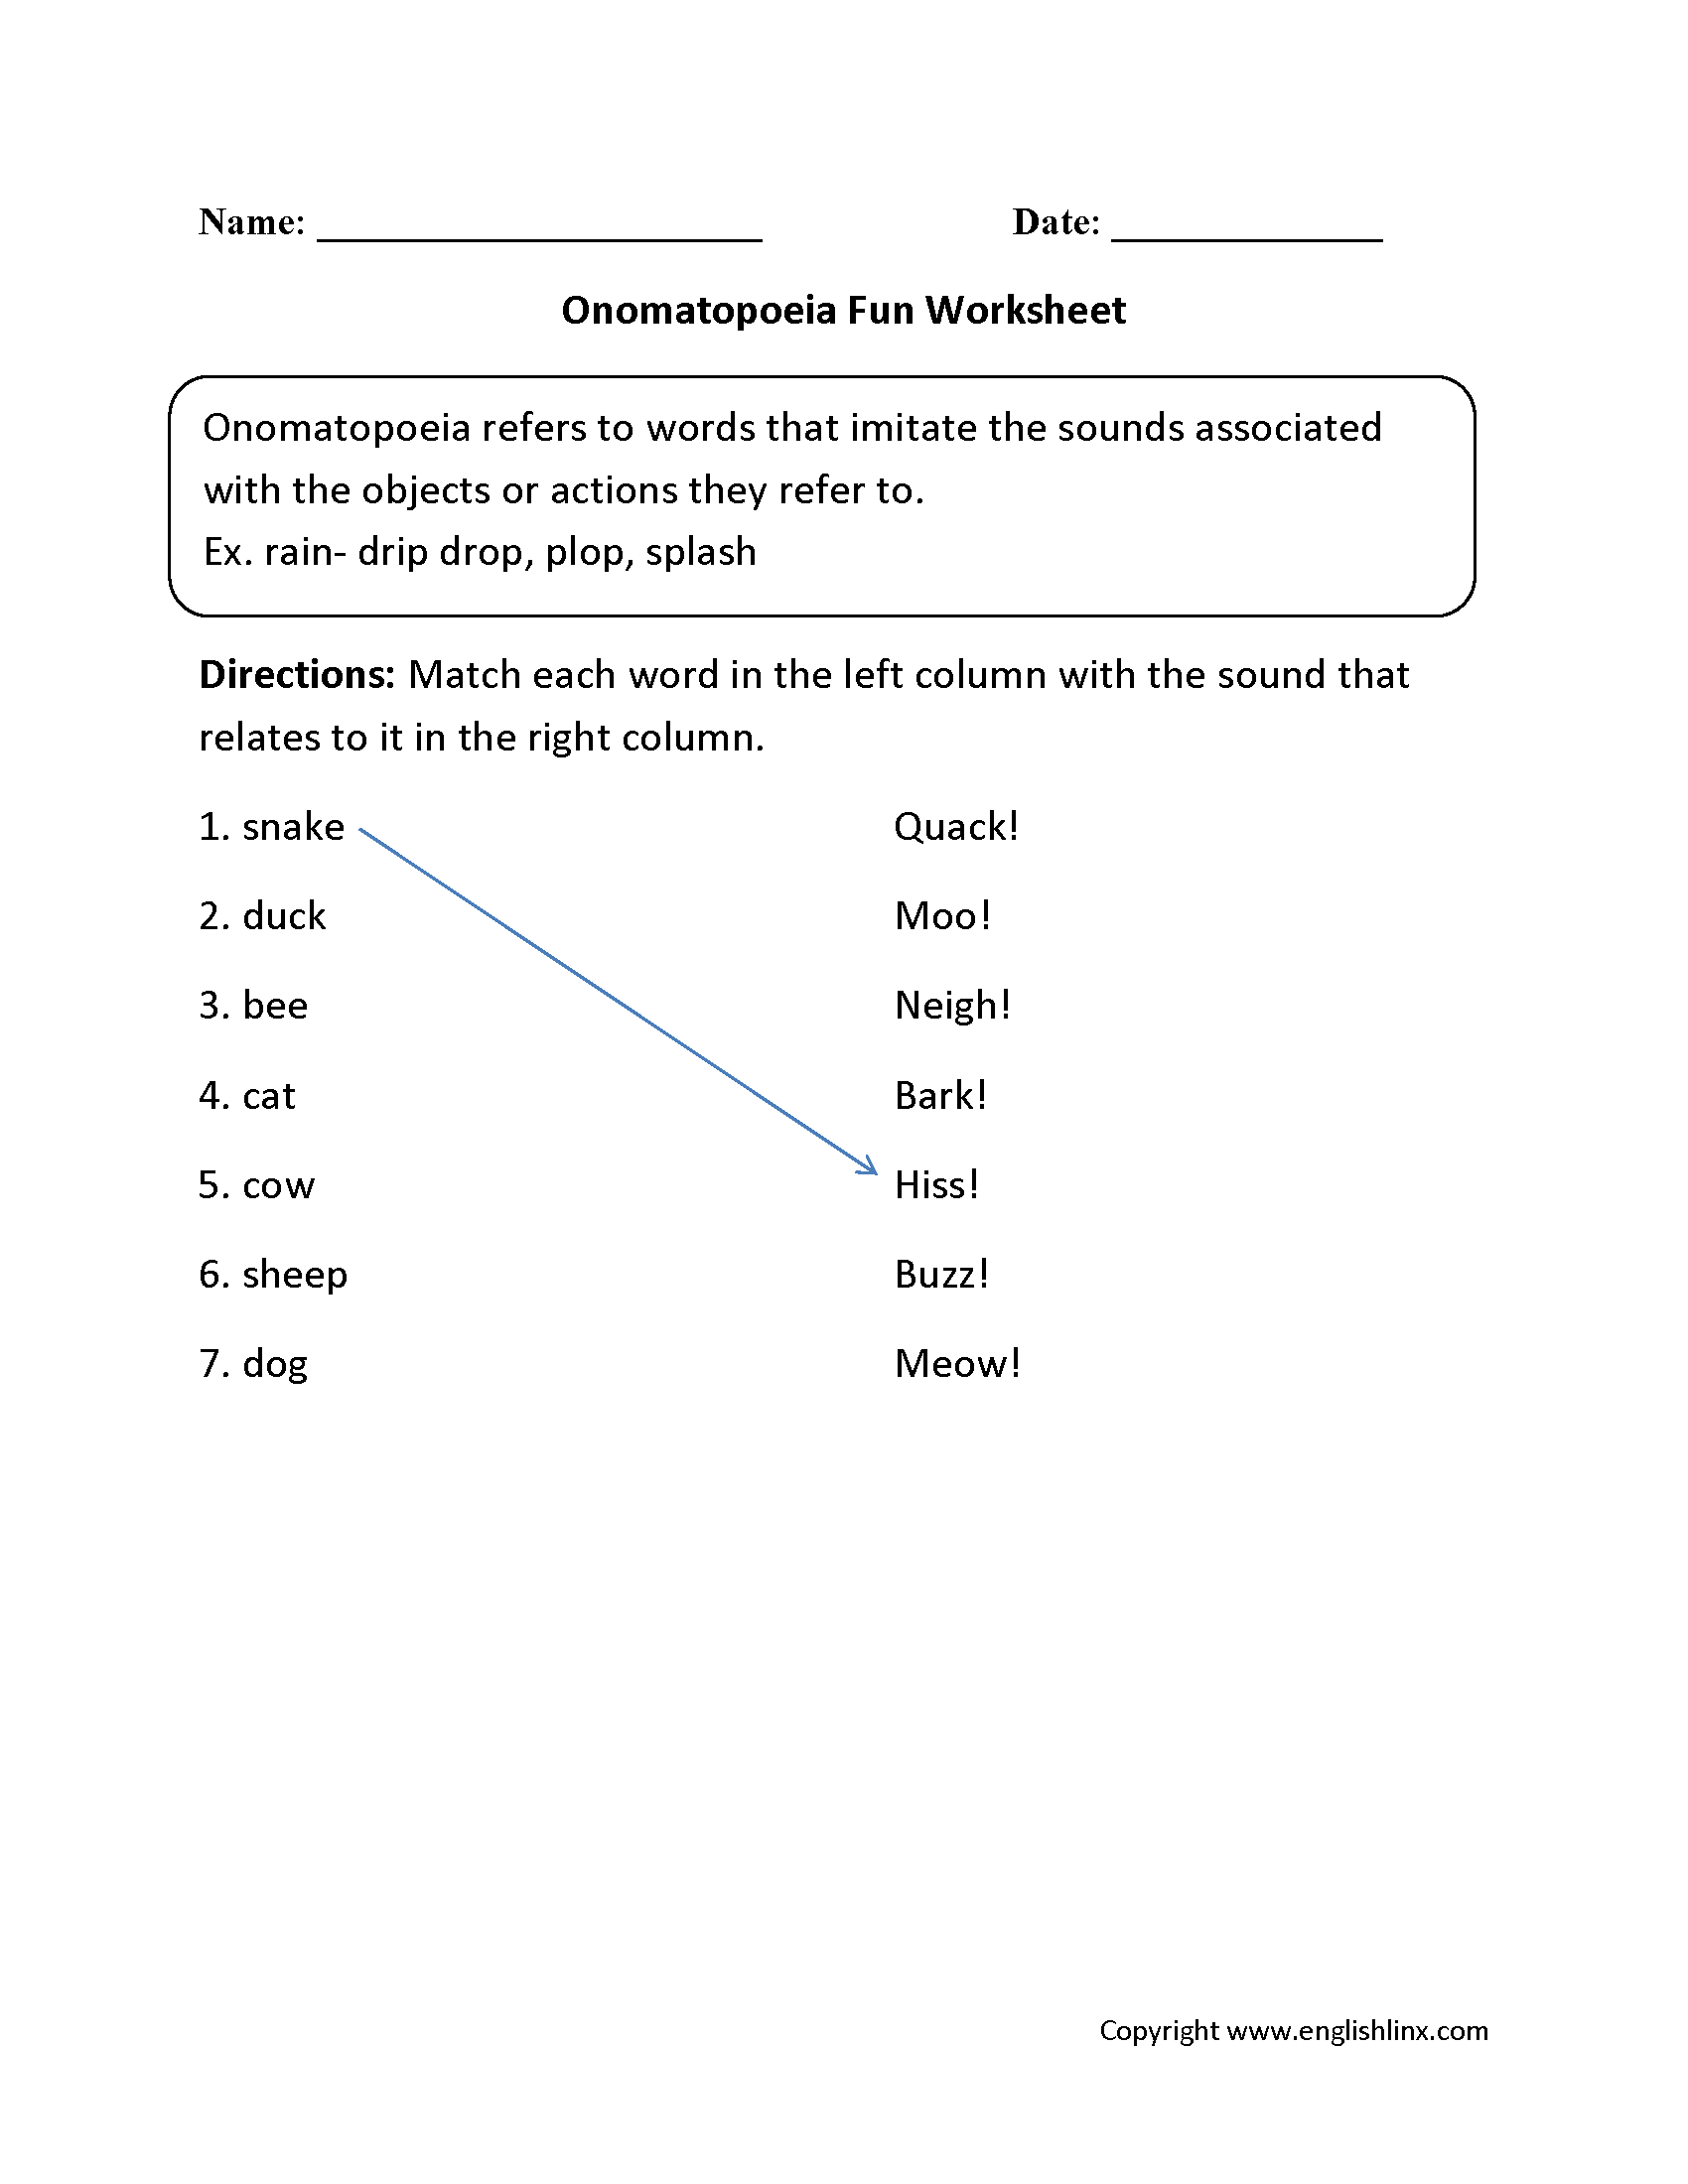 Onomatopoeia Fun with Worksheets